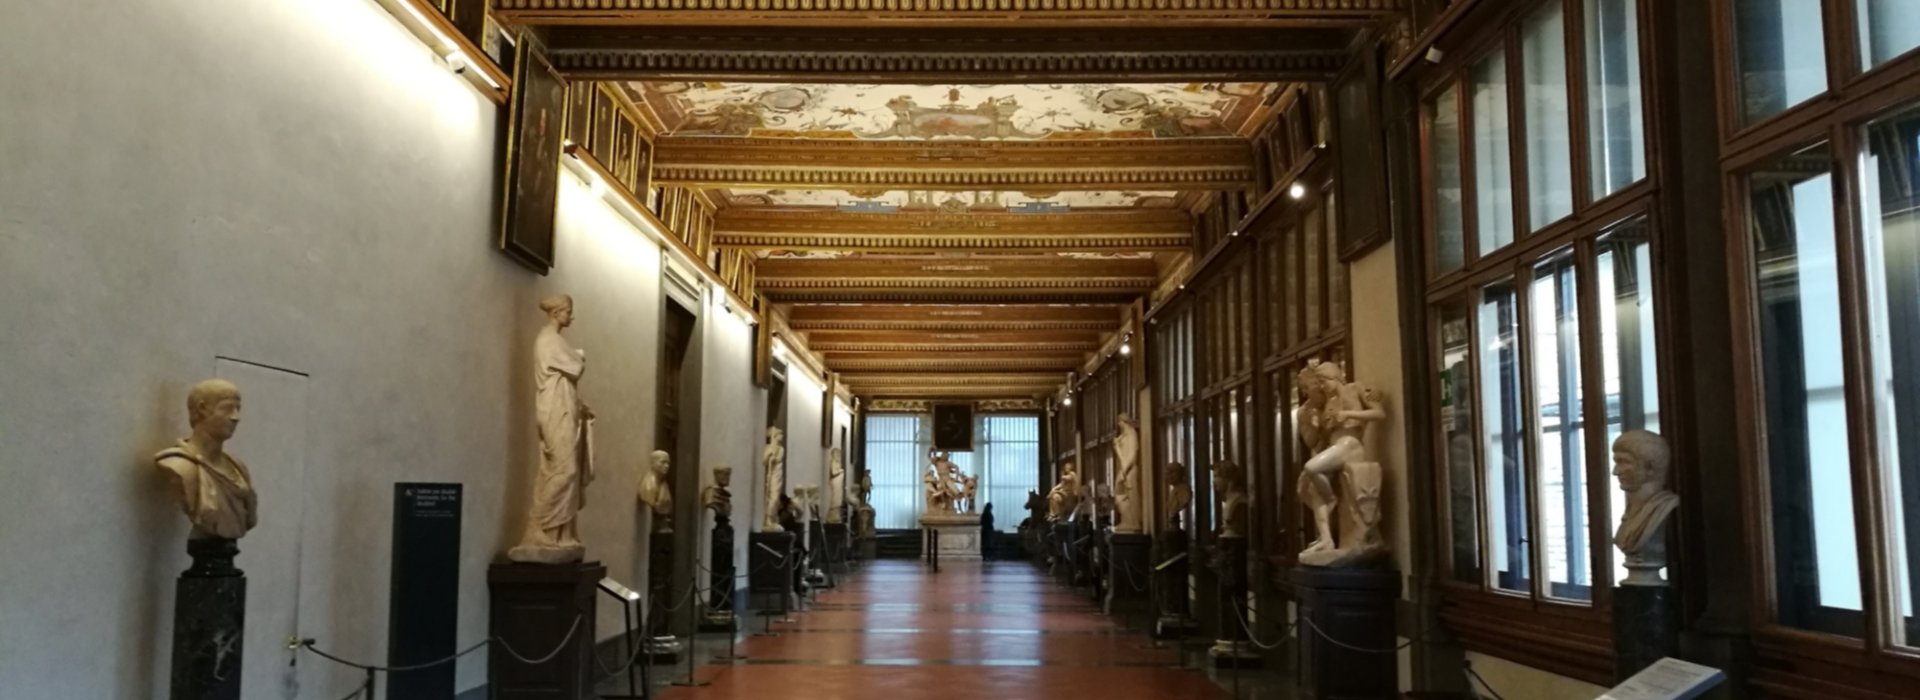 Visita guidata semiprivata della Galleria degli Uffizi di Firenze